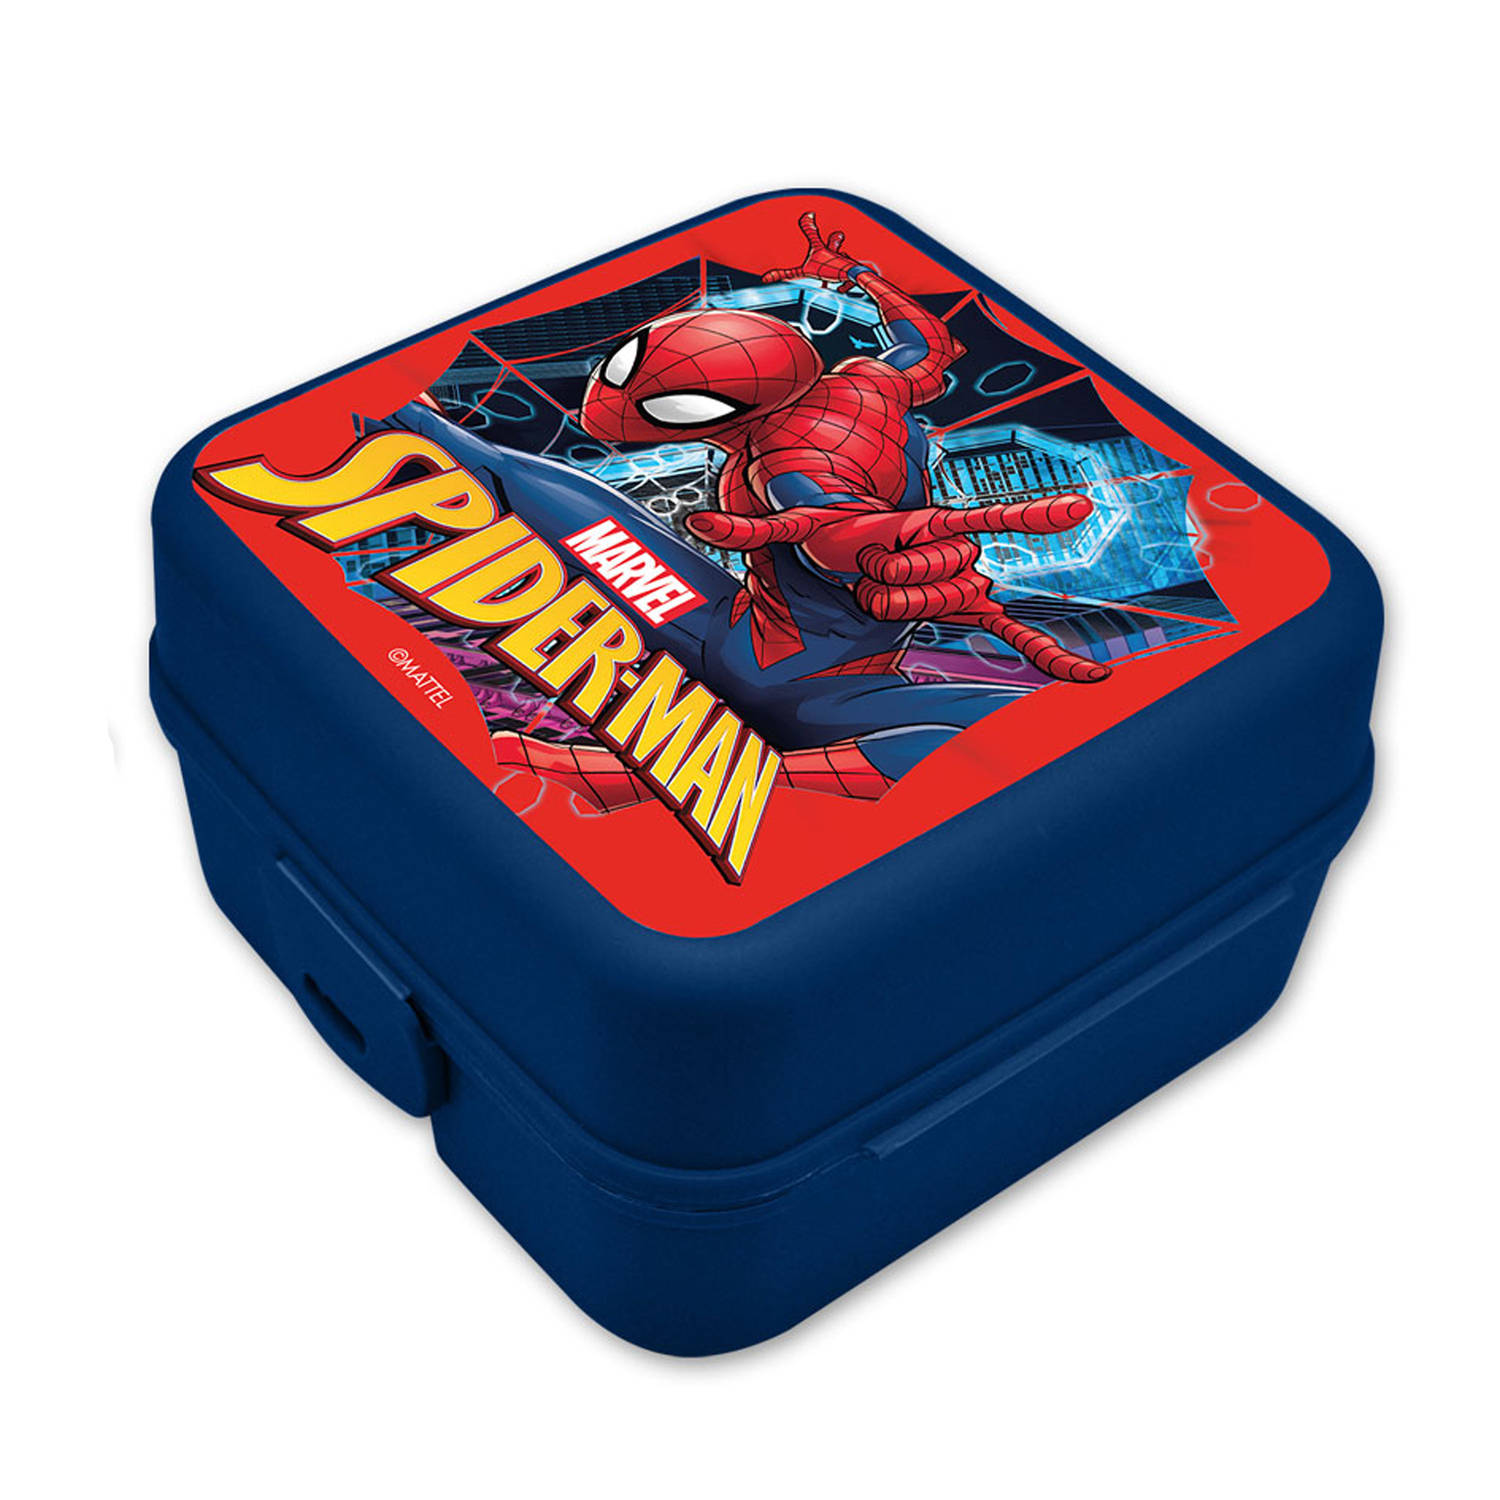 Marvel Spiderman broodtrommel/lunchbox voor kinderen - blauw - kunststof - 14 x 8 cm